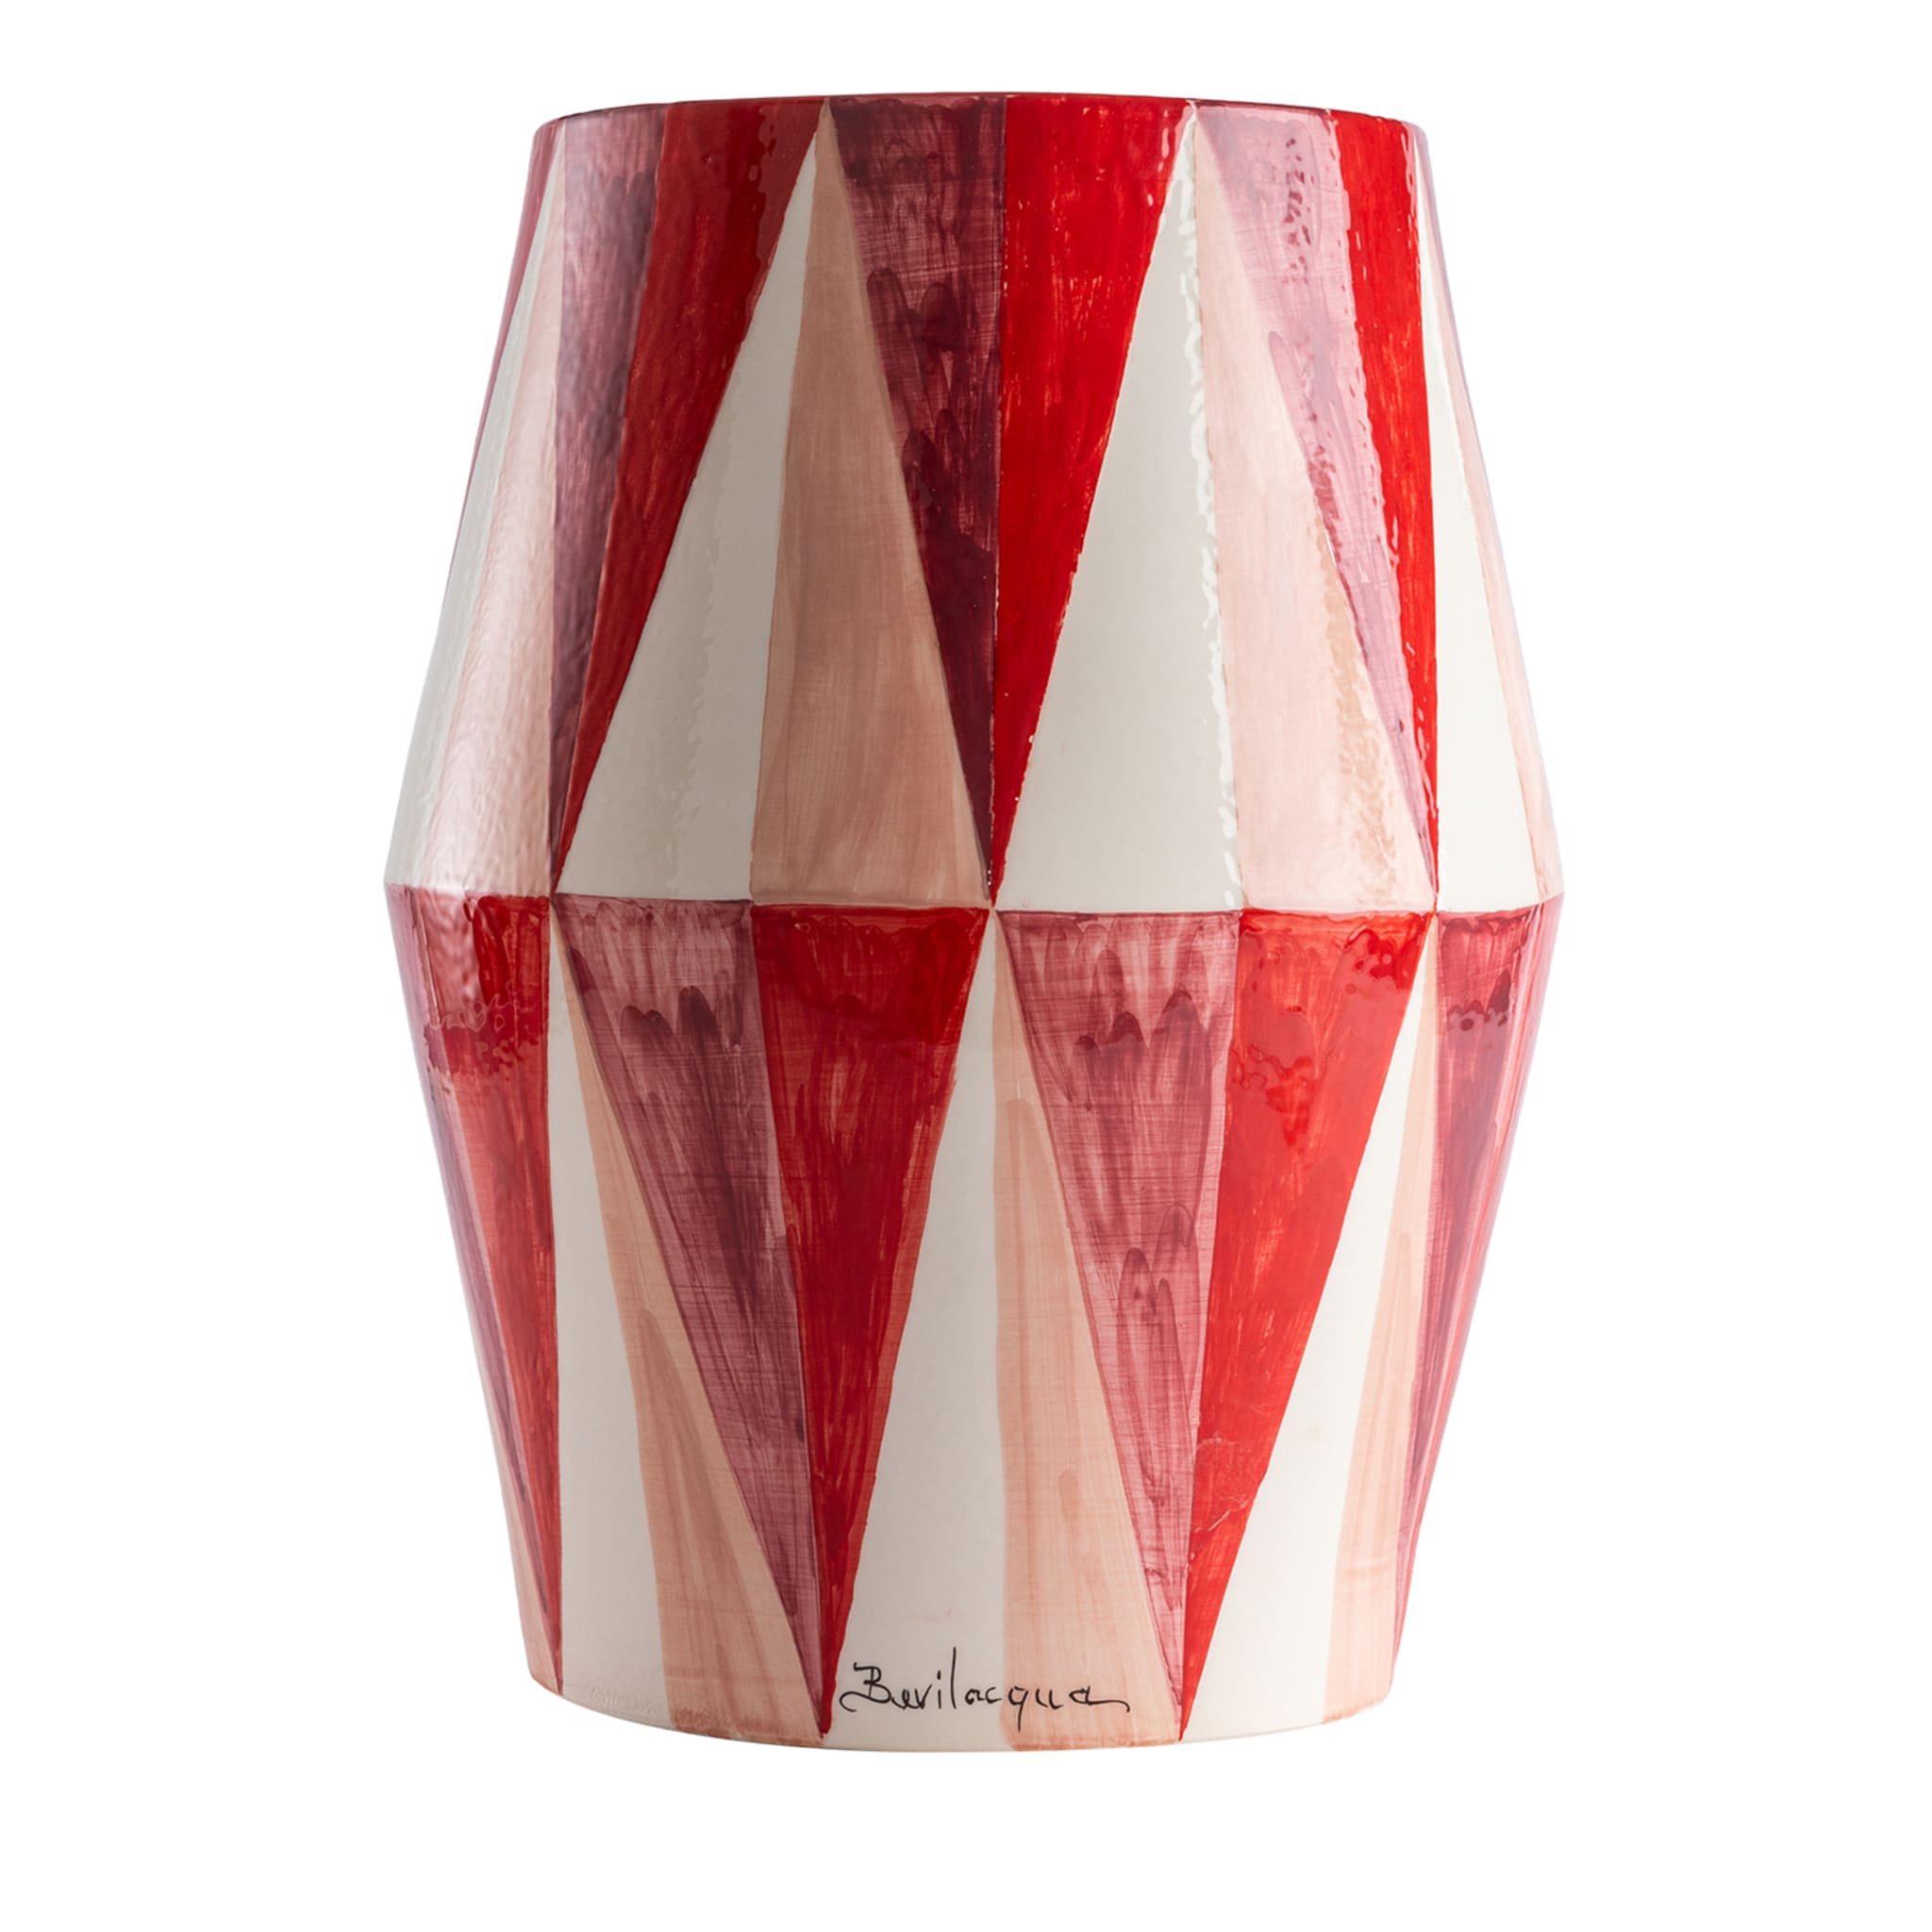 Décor de table en céramique brillante rouge et blanche à motif de losange - Vue principale